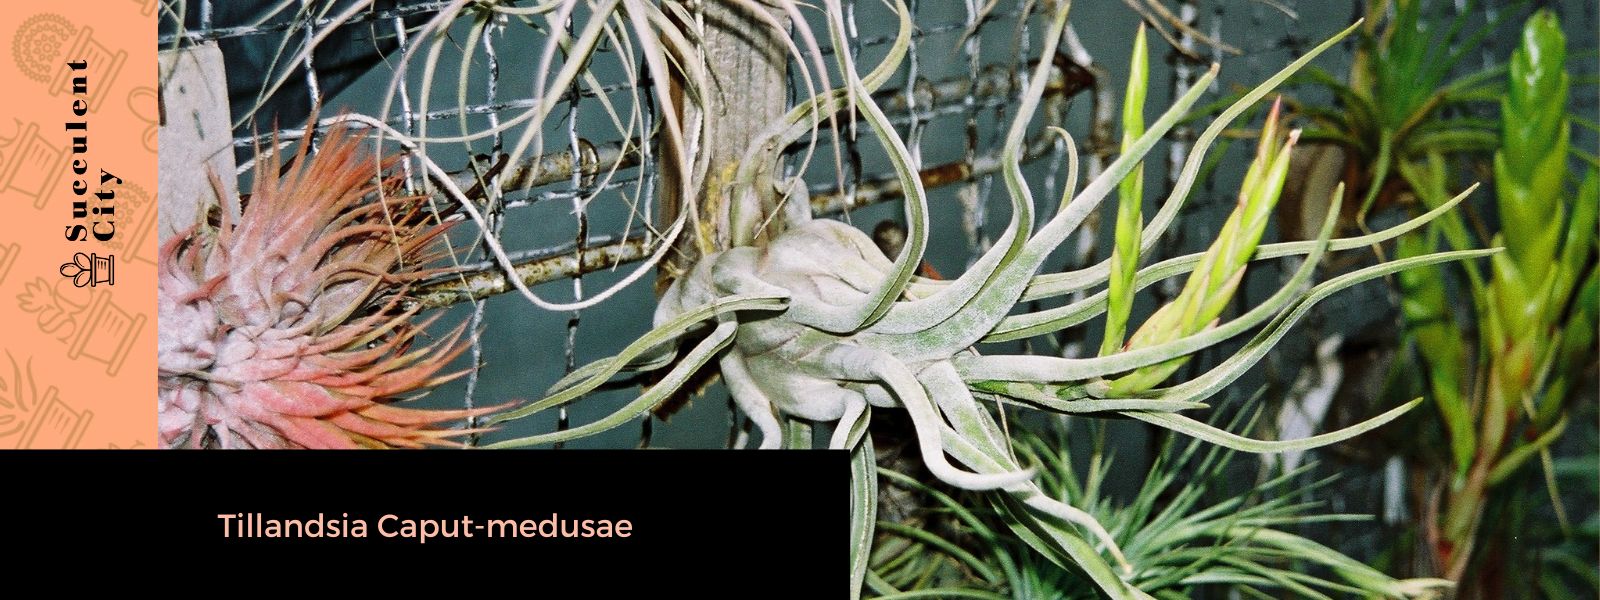 La planta principal de Medusa 'Tillandsia Caput-medusae'